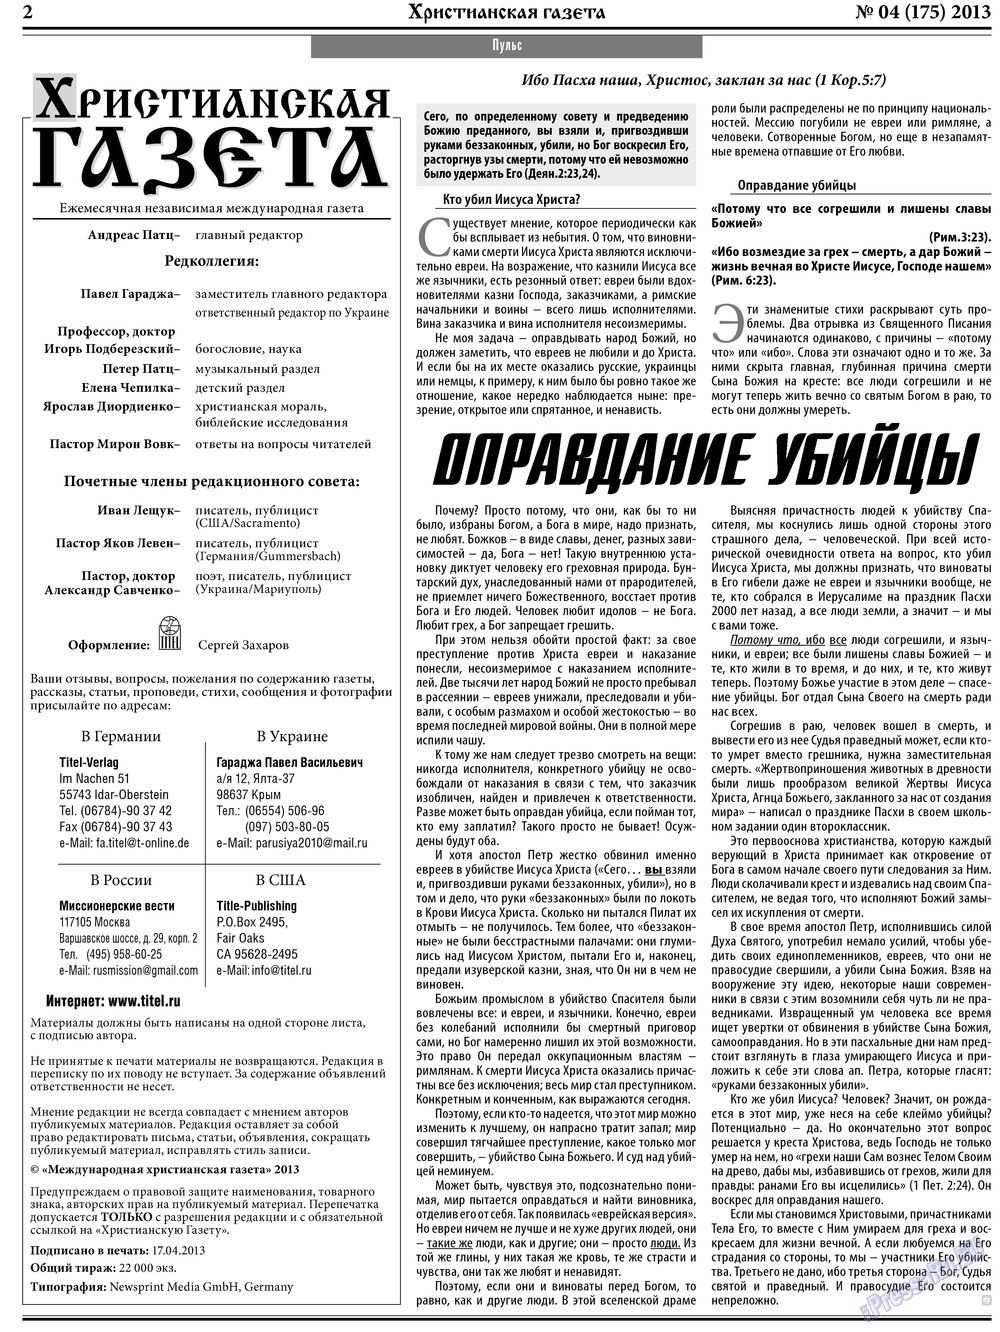 Христианская газета, газета. 2013 №4 стр.2